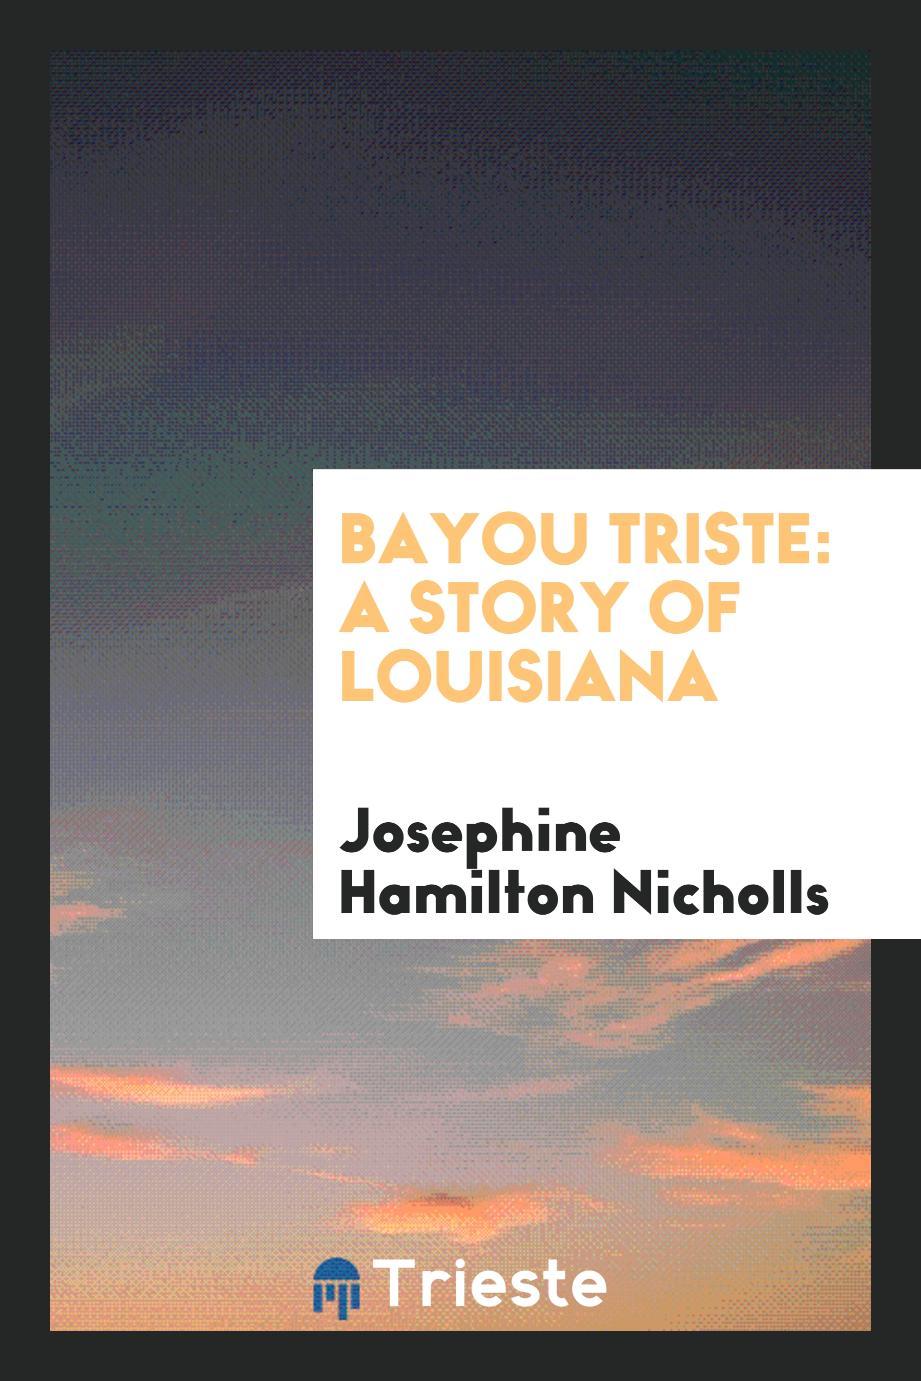 Bayou triste: a story of Louisiana